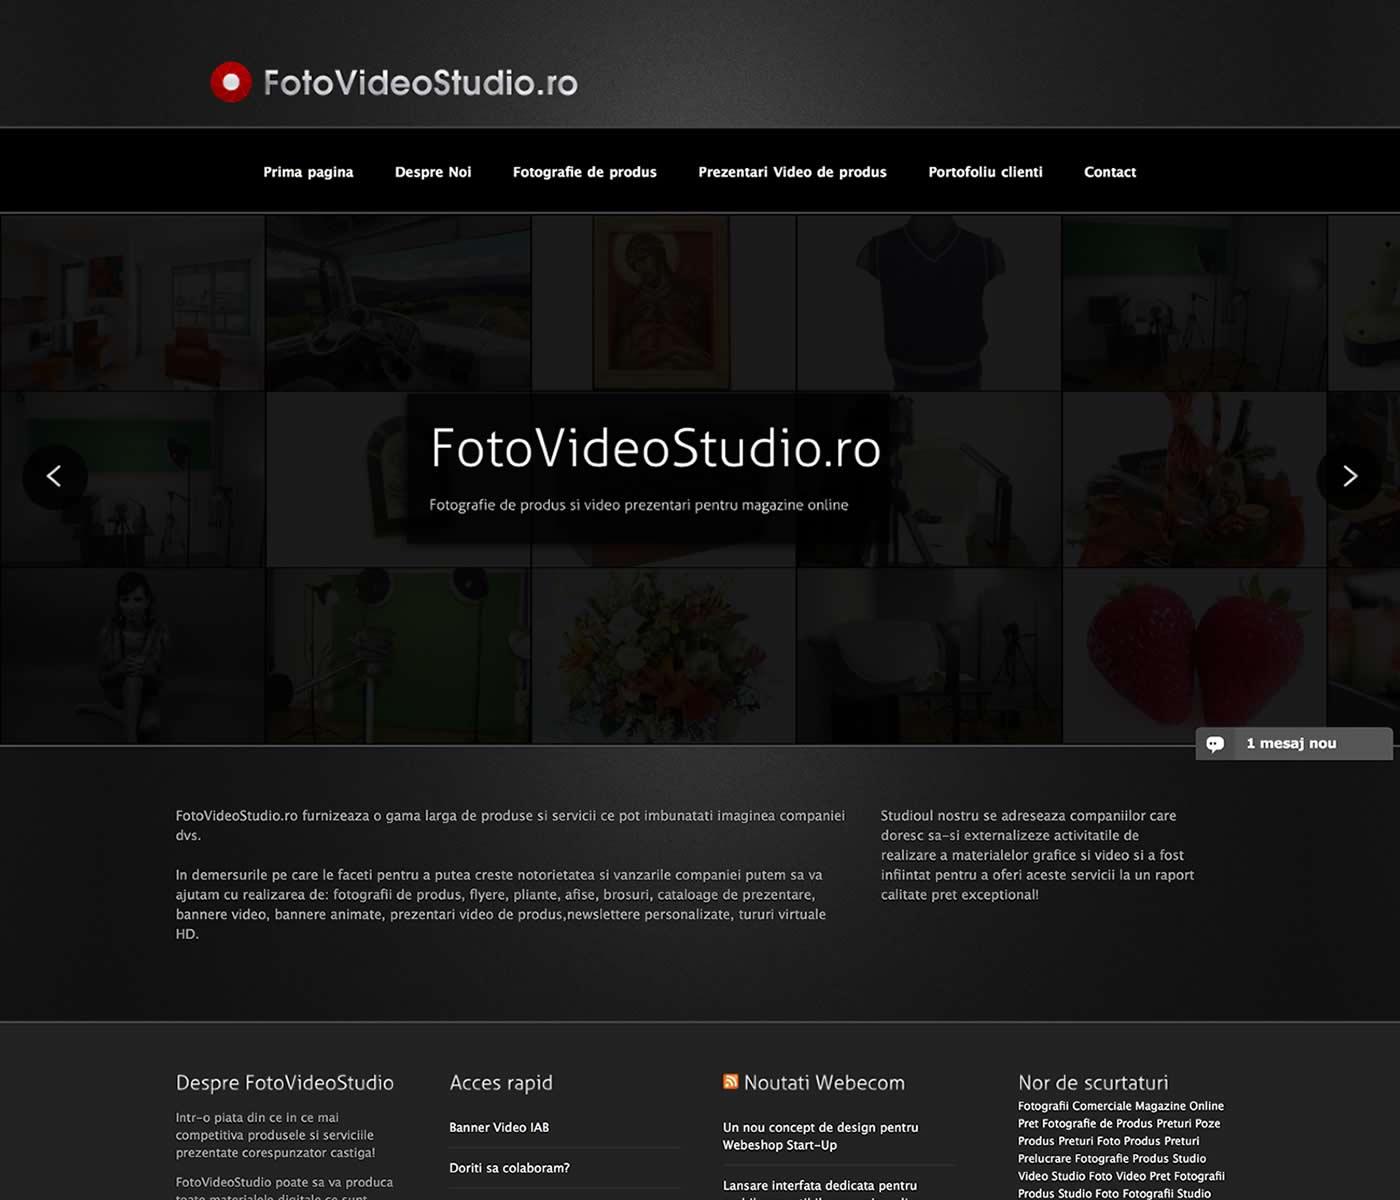 Studio Foto ce oferta servicii de fotografie de produs, prezentari video de produs.